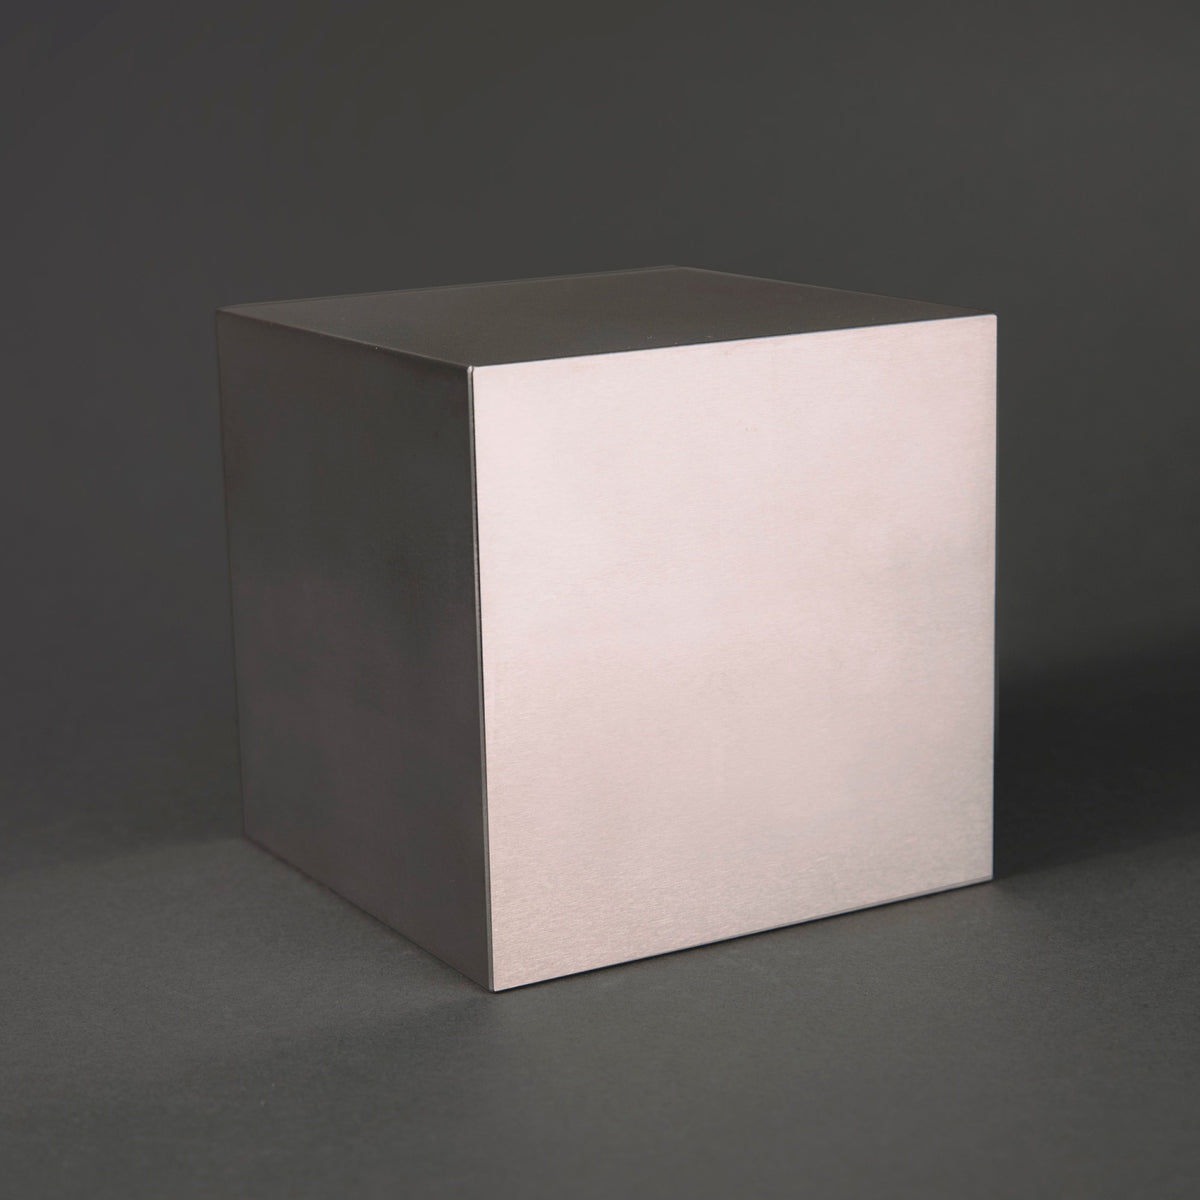 4 inch clean tungsten cube